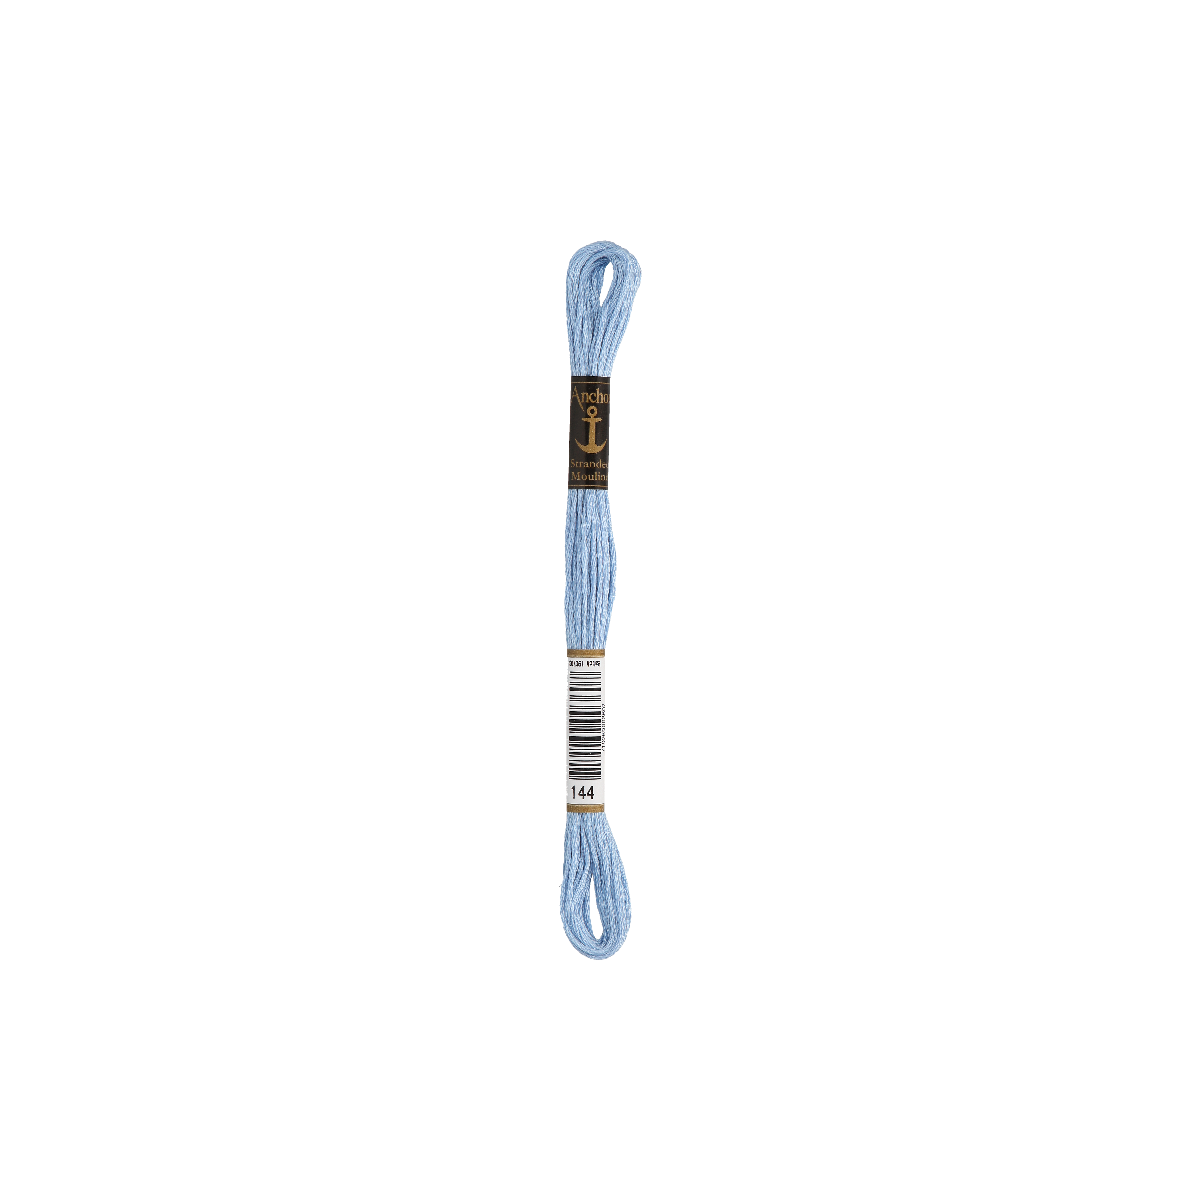 Anchor Sticktwist 8m, blu perla, cotone, colore 144, 6 fili